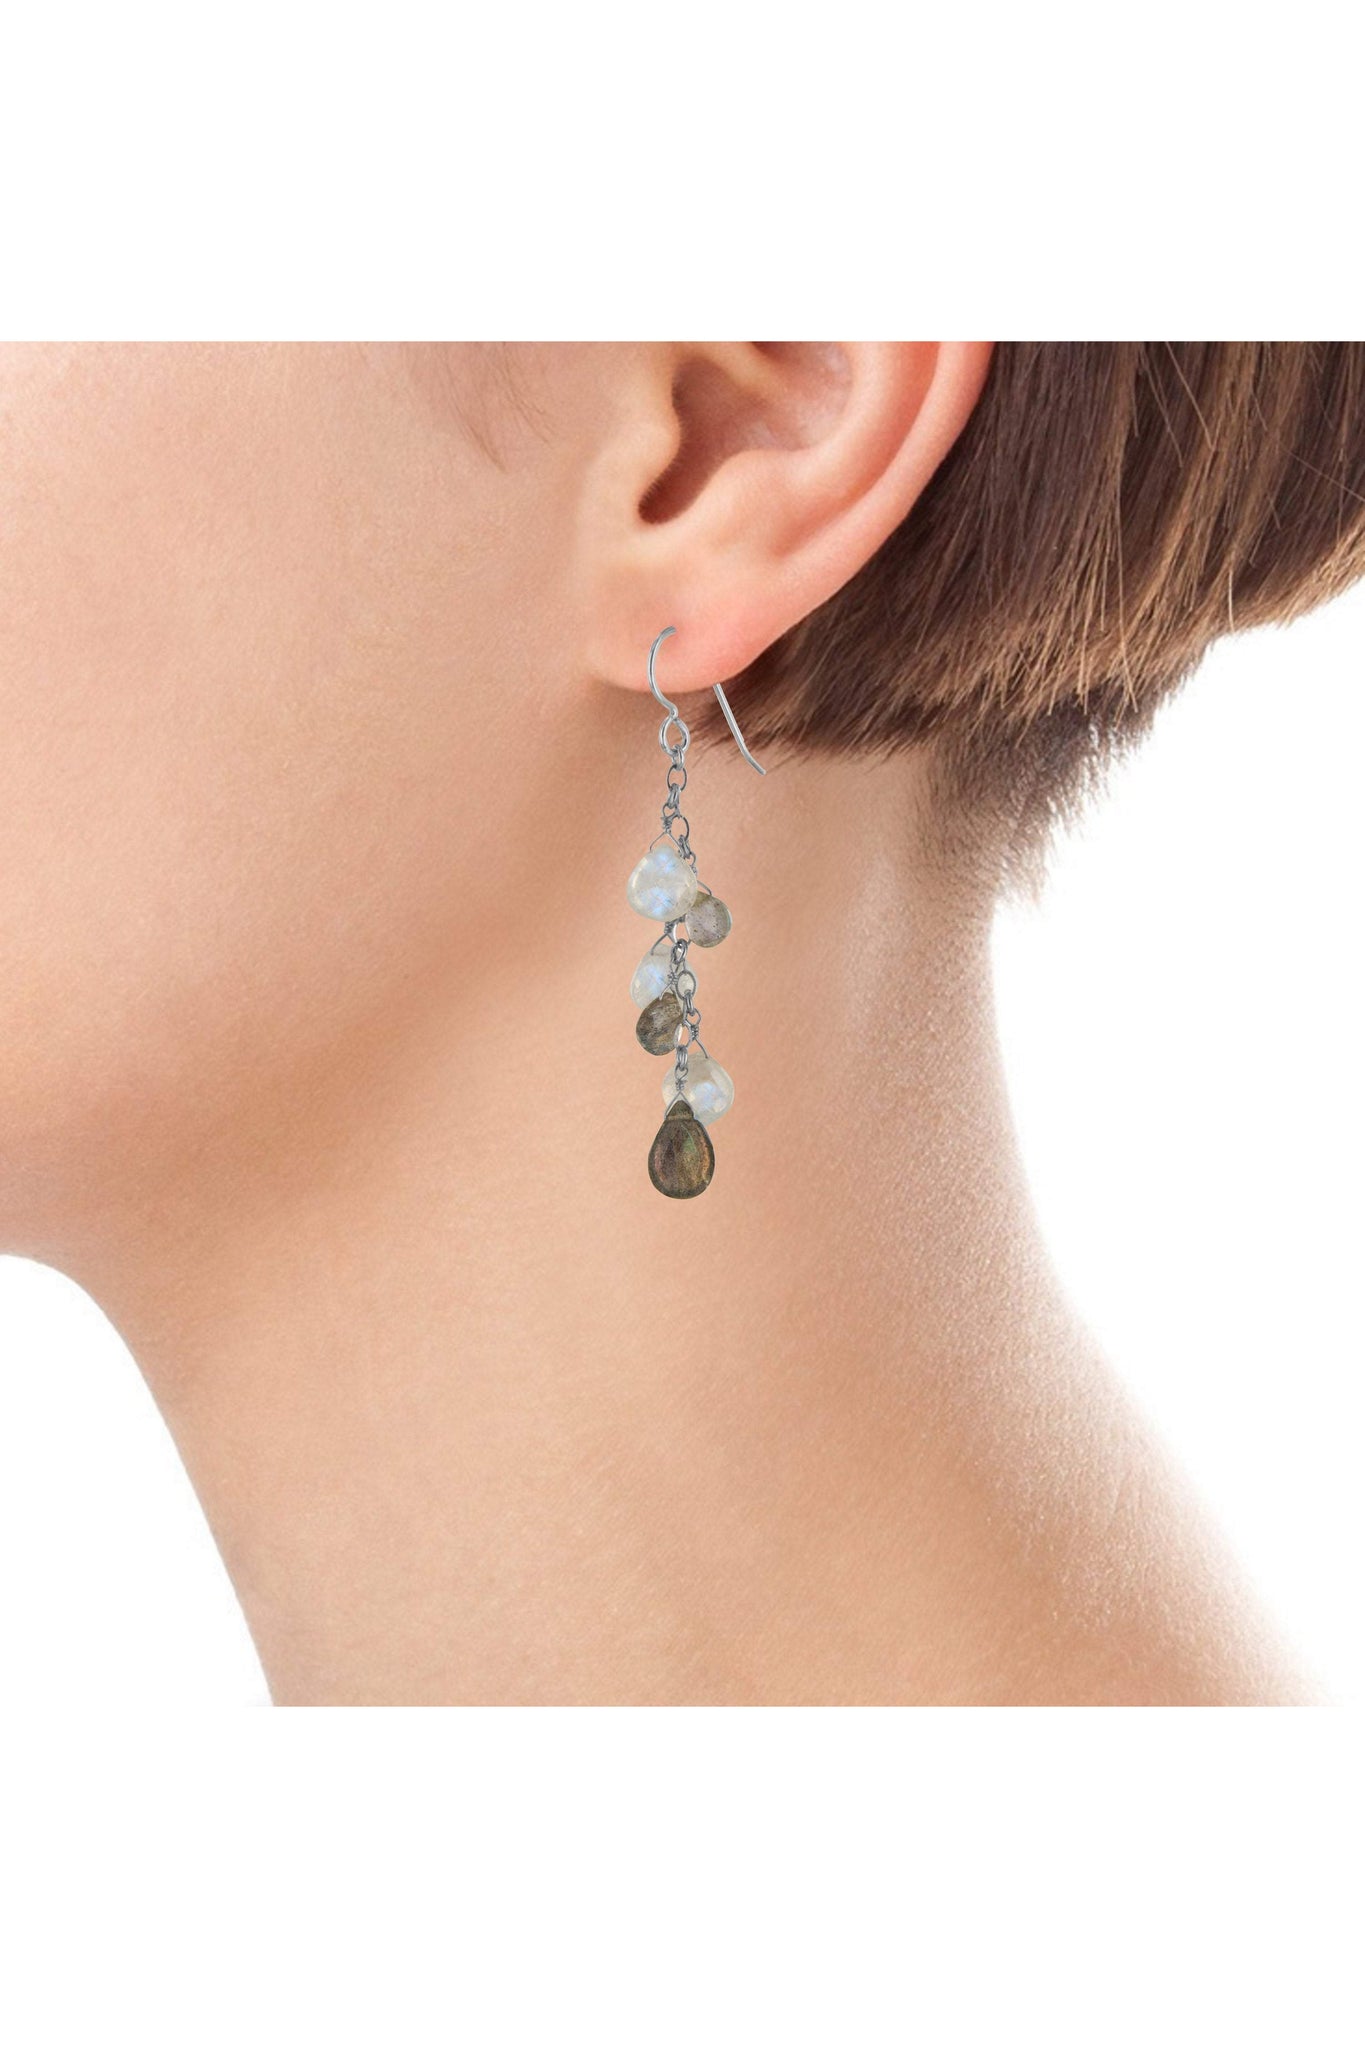 Labradorite Earrings, Rainbow Moonstone Gemstones